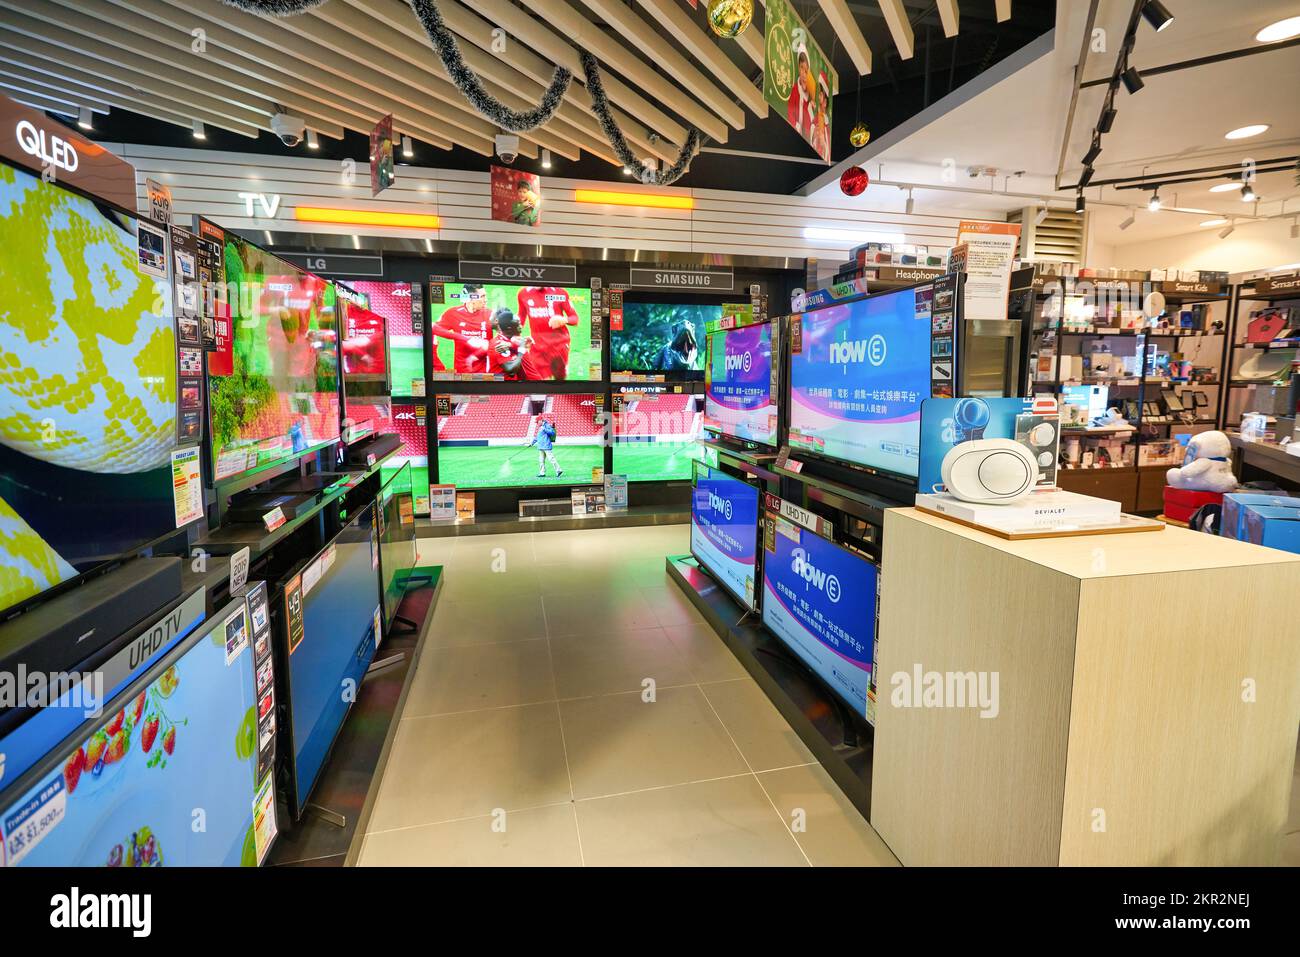 HONG KONG - CIRCA DECEMBER, 2019: interior shot of Fortress store at Elements shopping mall in Hong Kong. Stock Photo